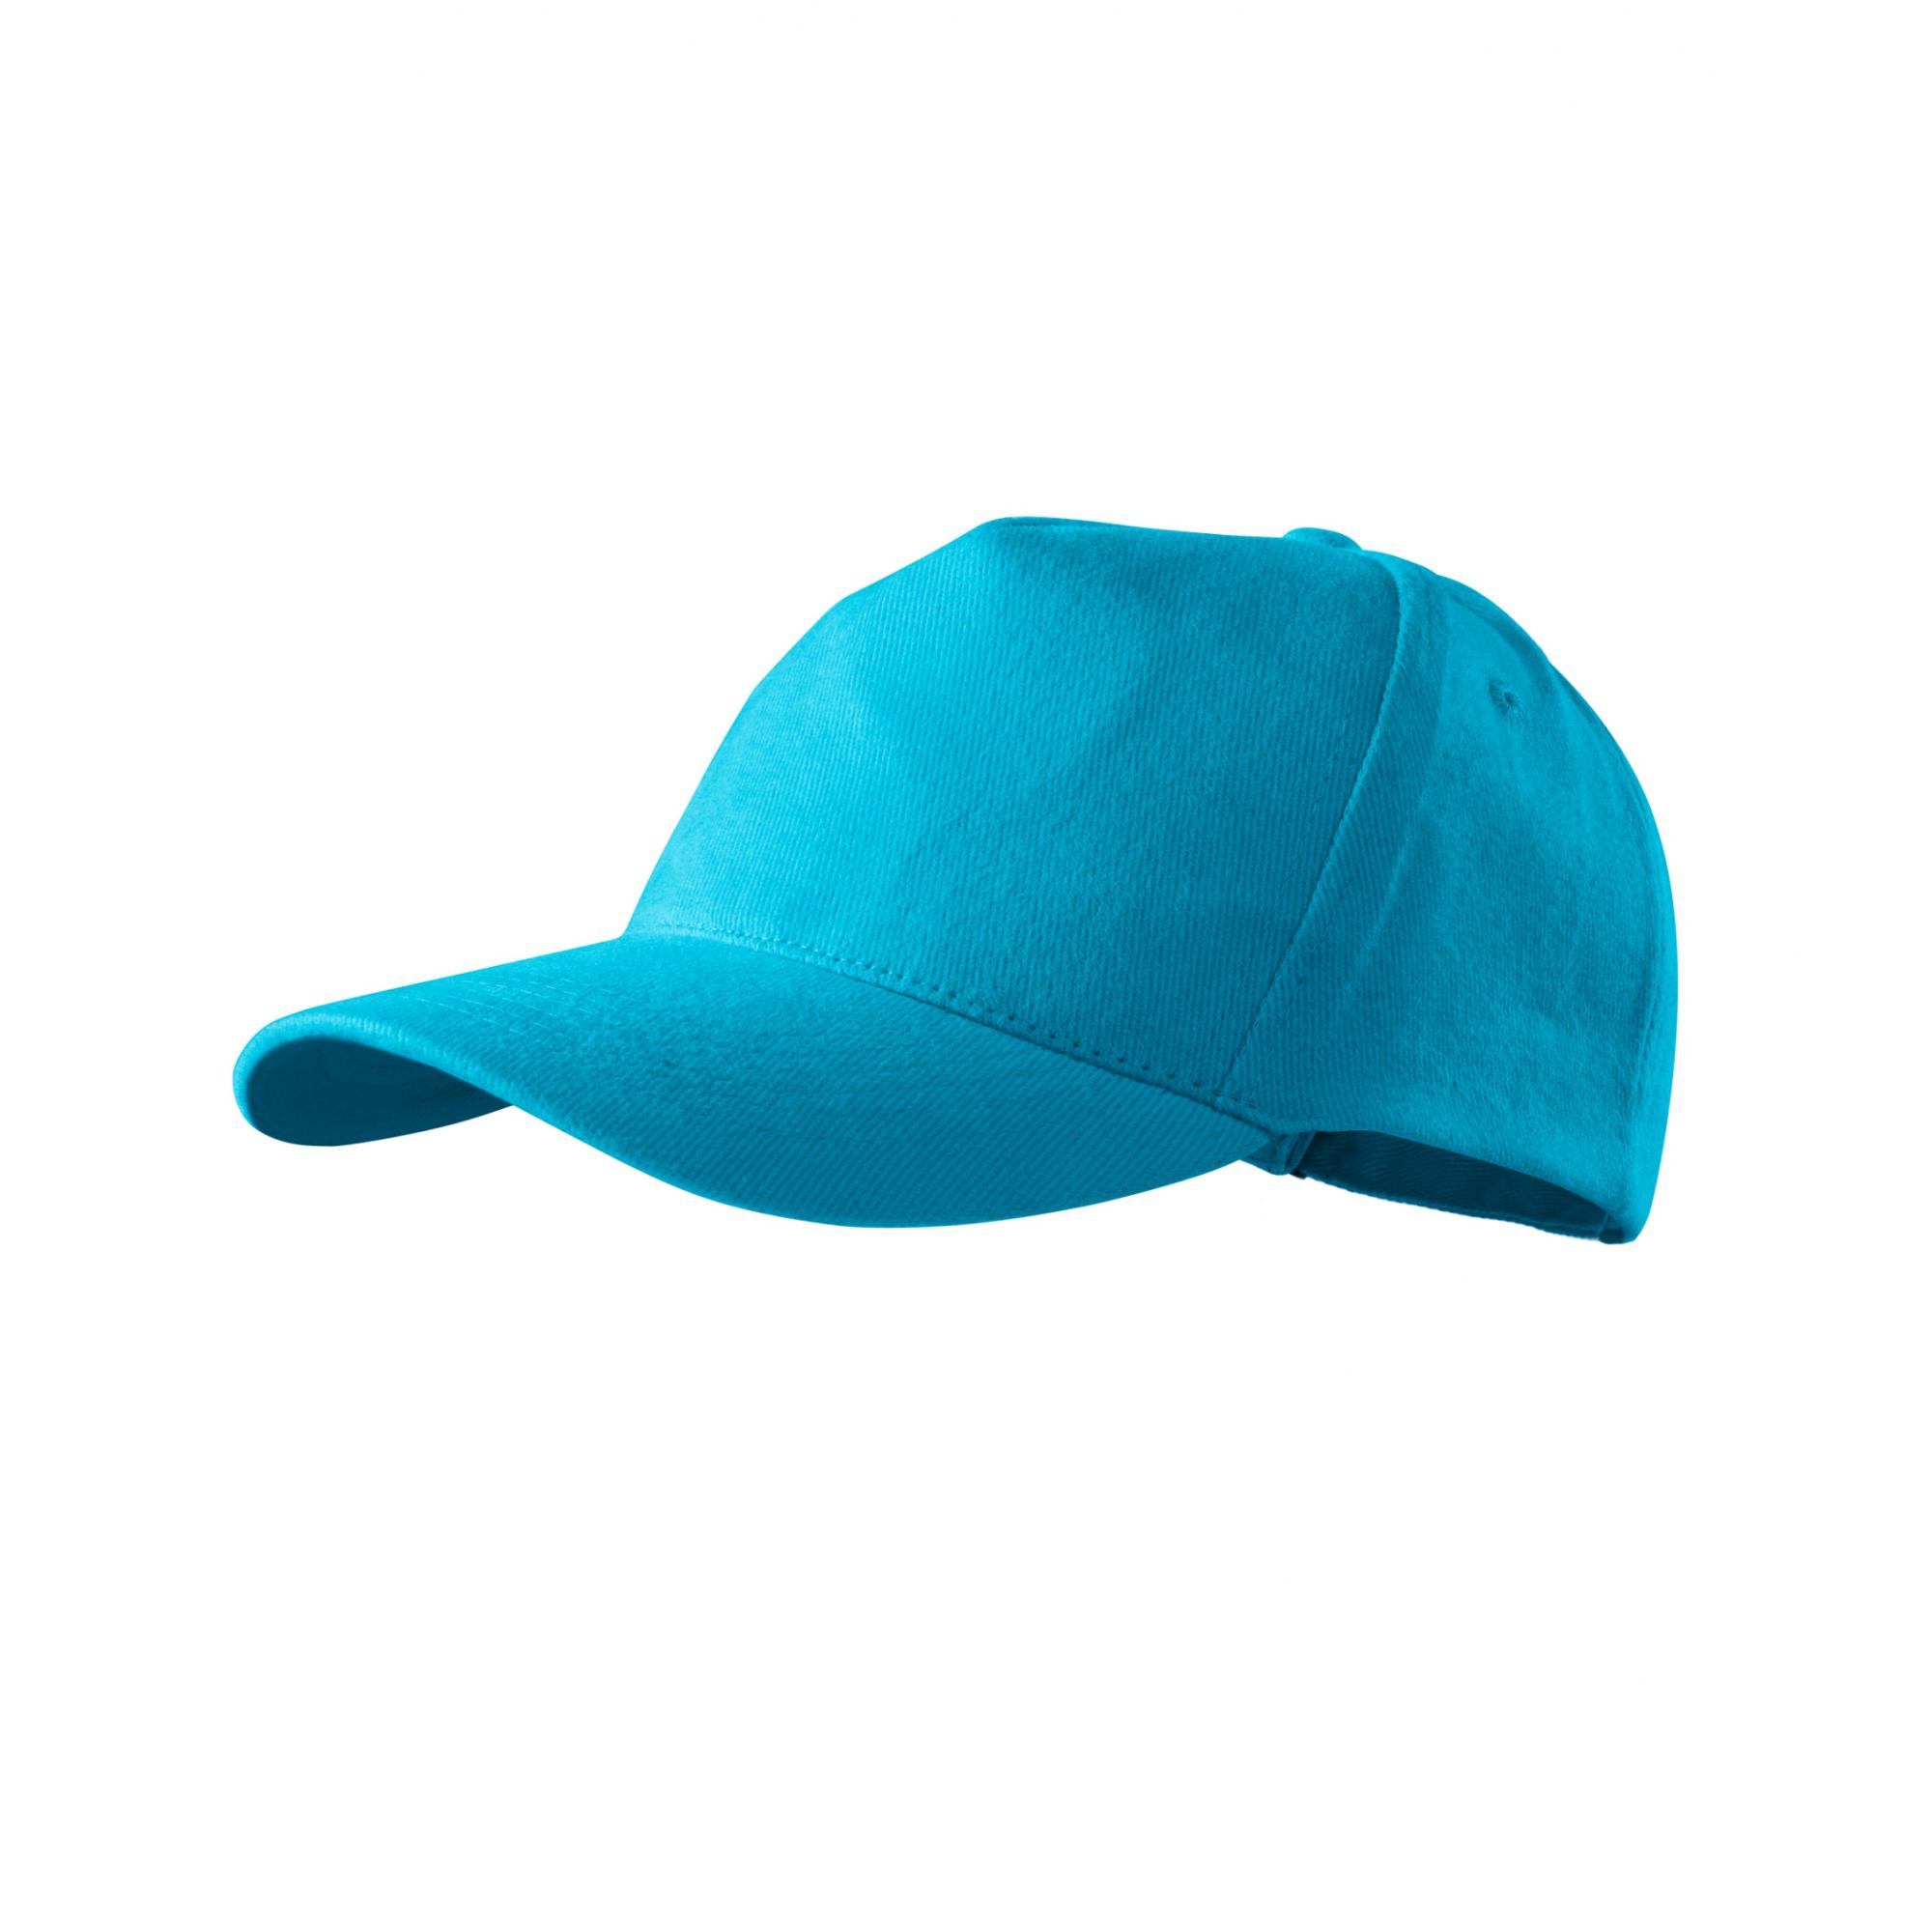 Şapcă unisex 5P 307 Turcoaz Marime universala